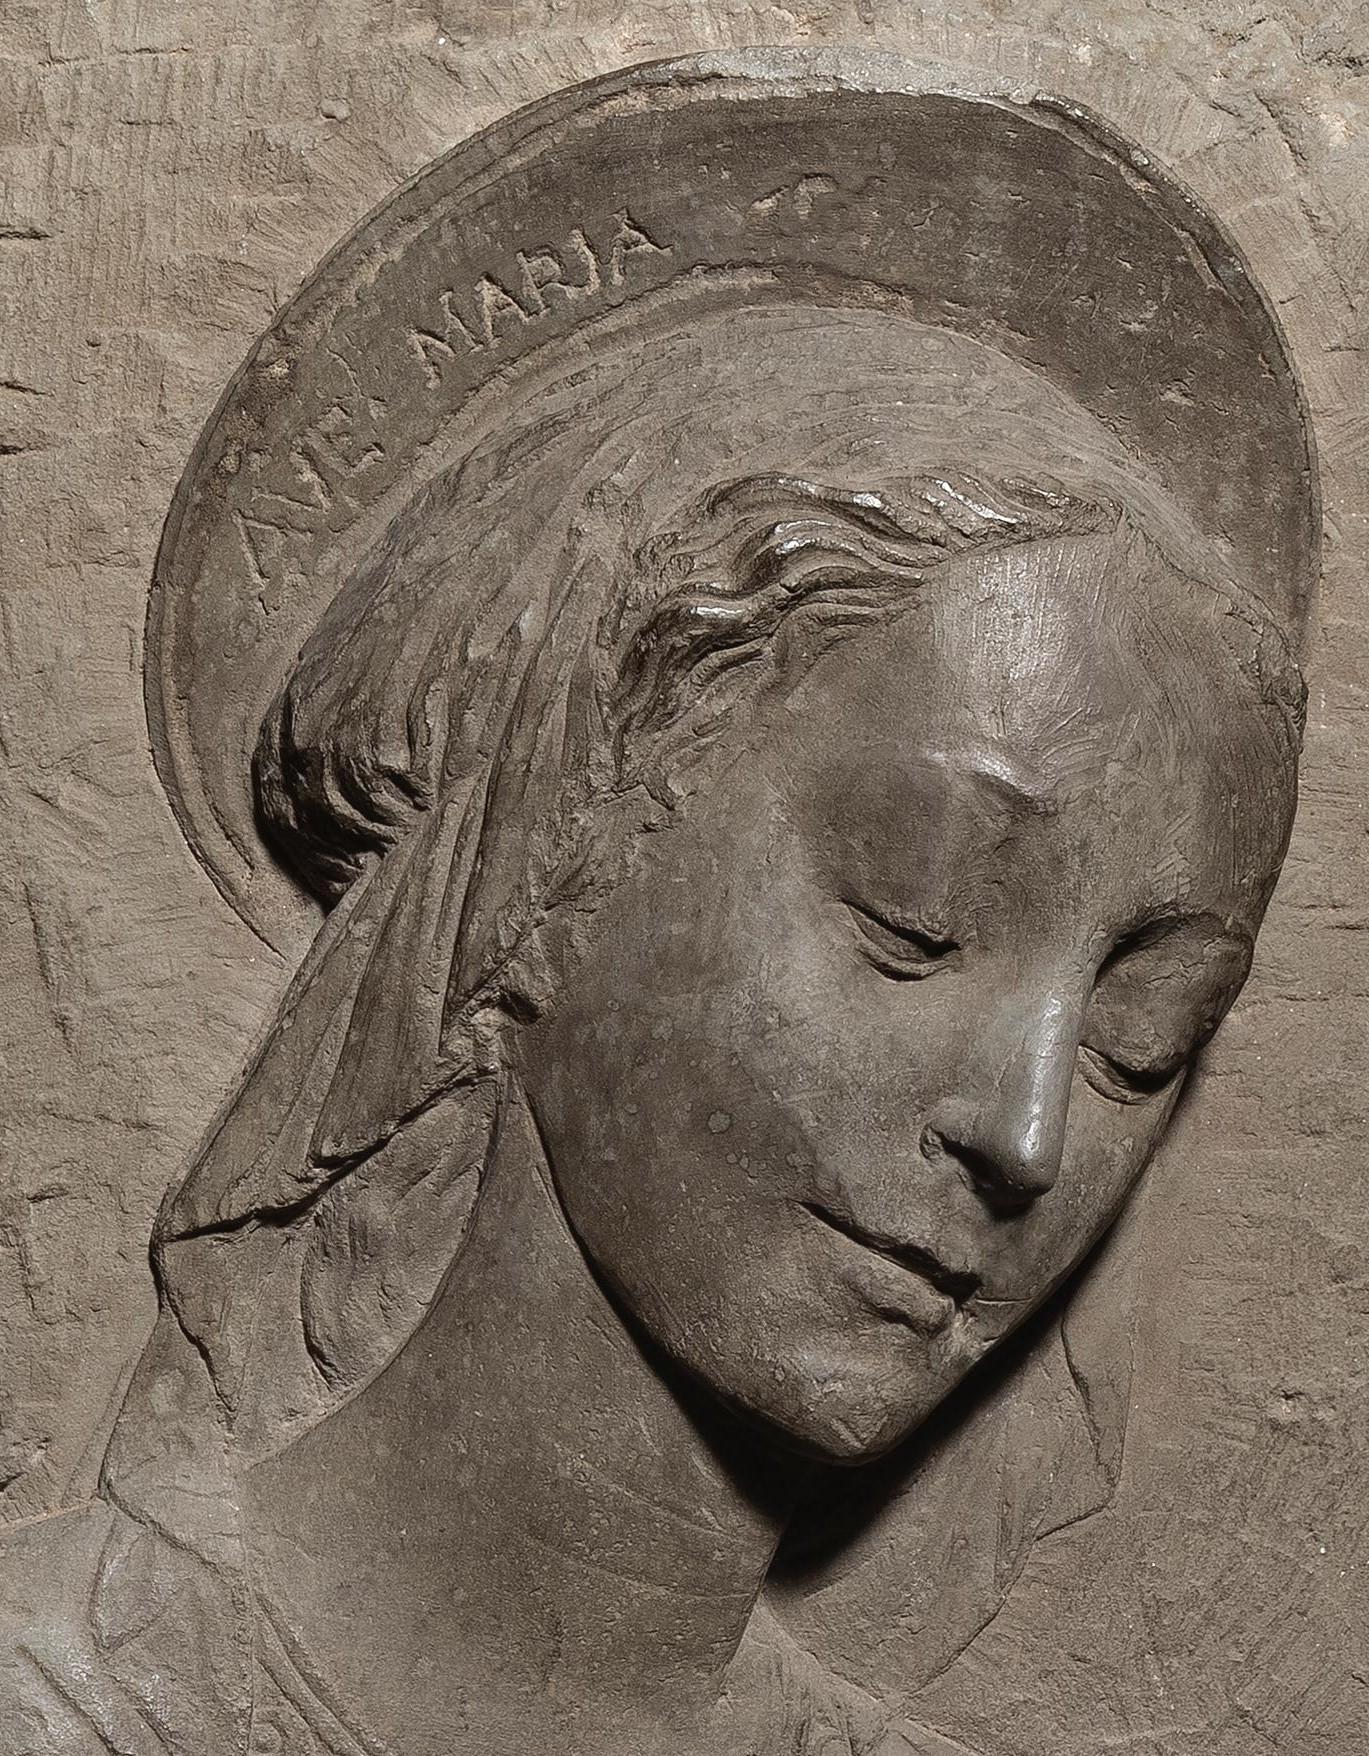 Ende des 15. Jahrhunderts Florentiner Schule Madonna mit Kind Flachrelief – Sculpture von Florentine School of the late 15th century